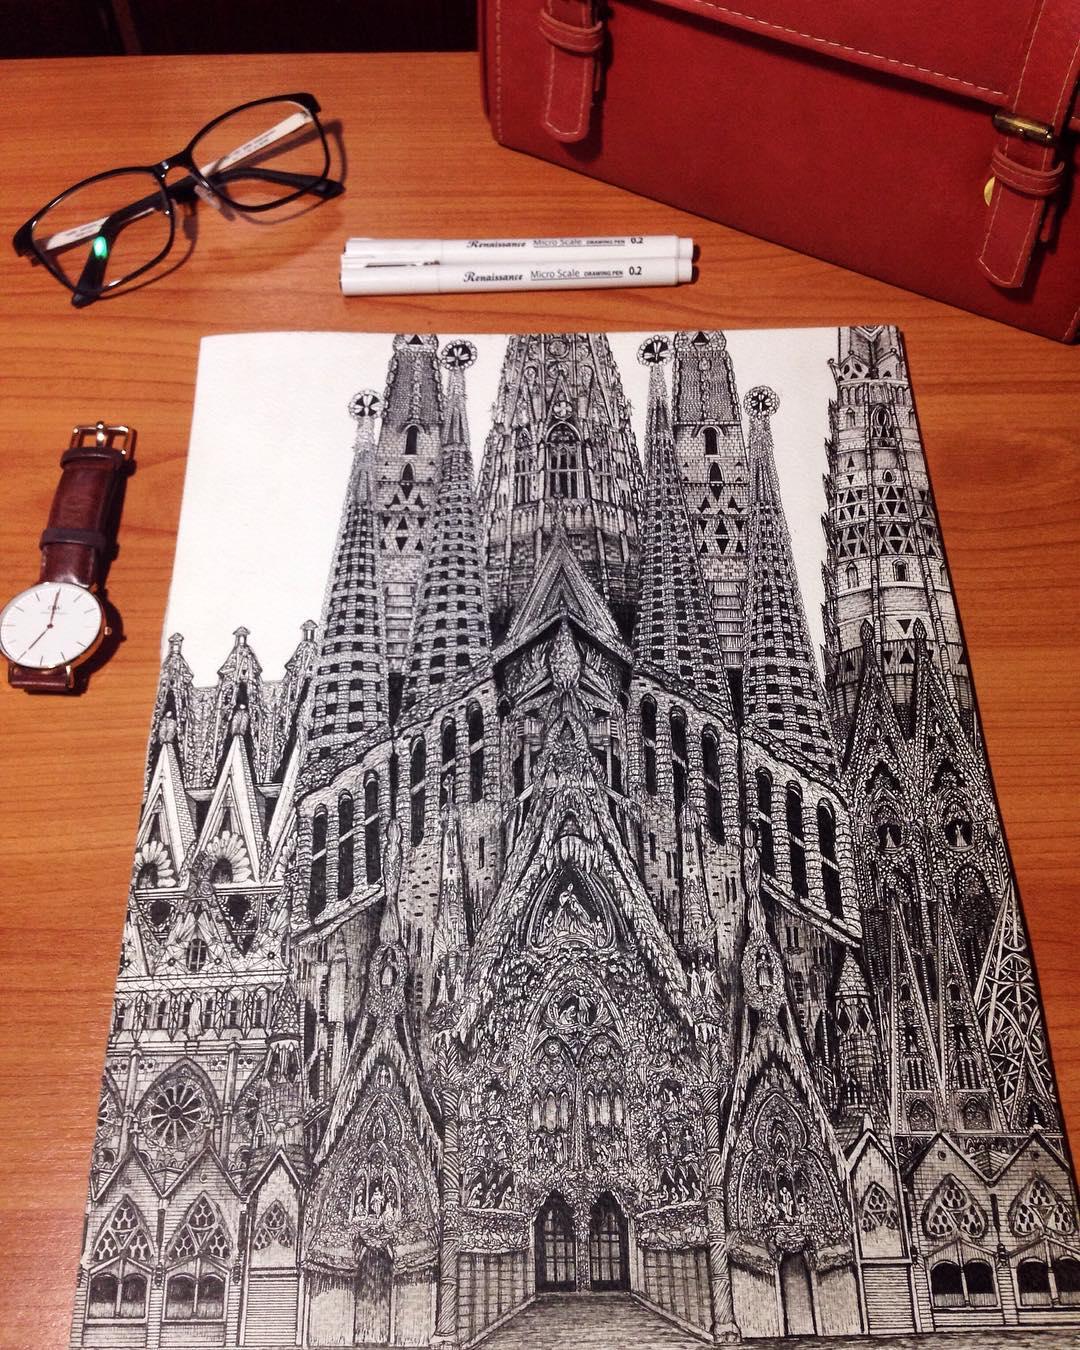 The Sagrada Família, Spain. (Courtesy of <a href="https://www.instagram.com/emi_nkjm/">Emi Nakajima</a>)